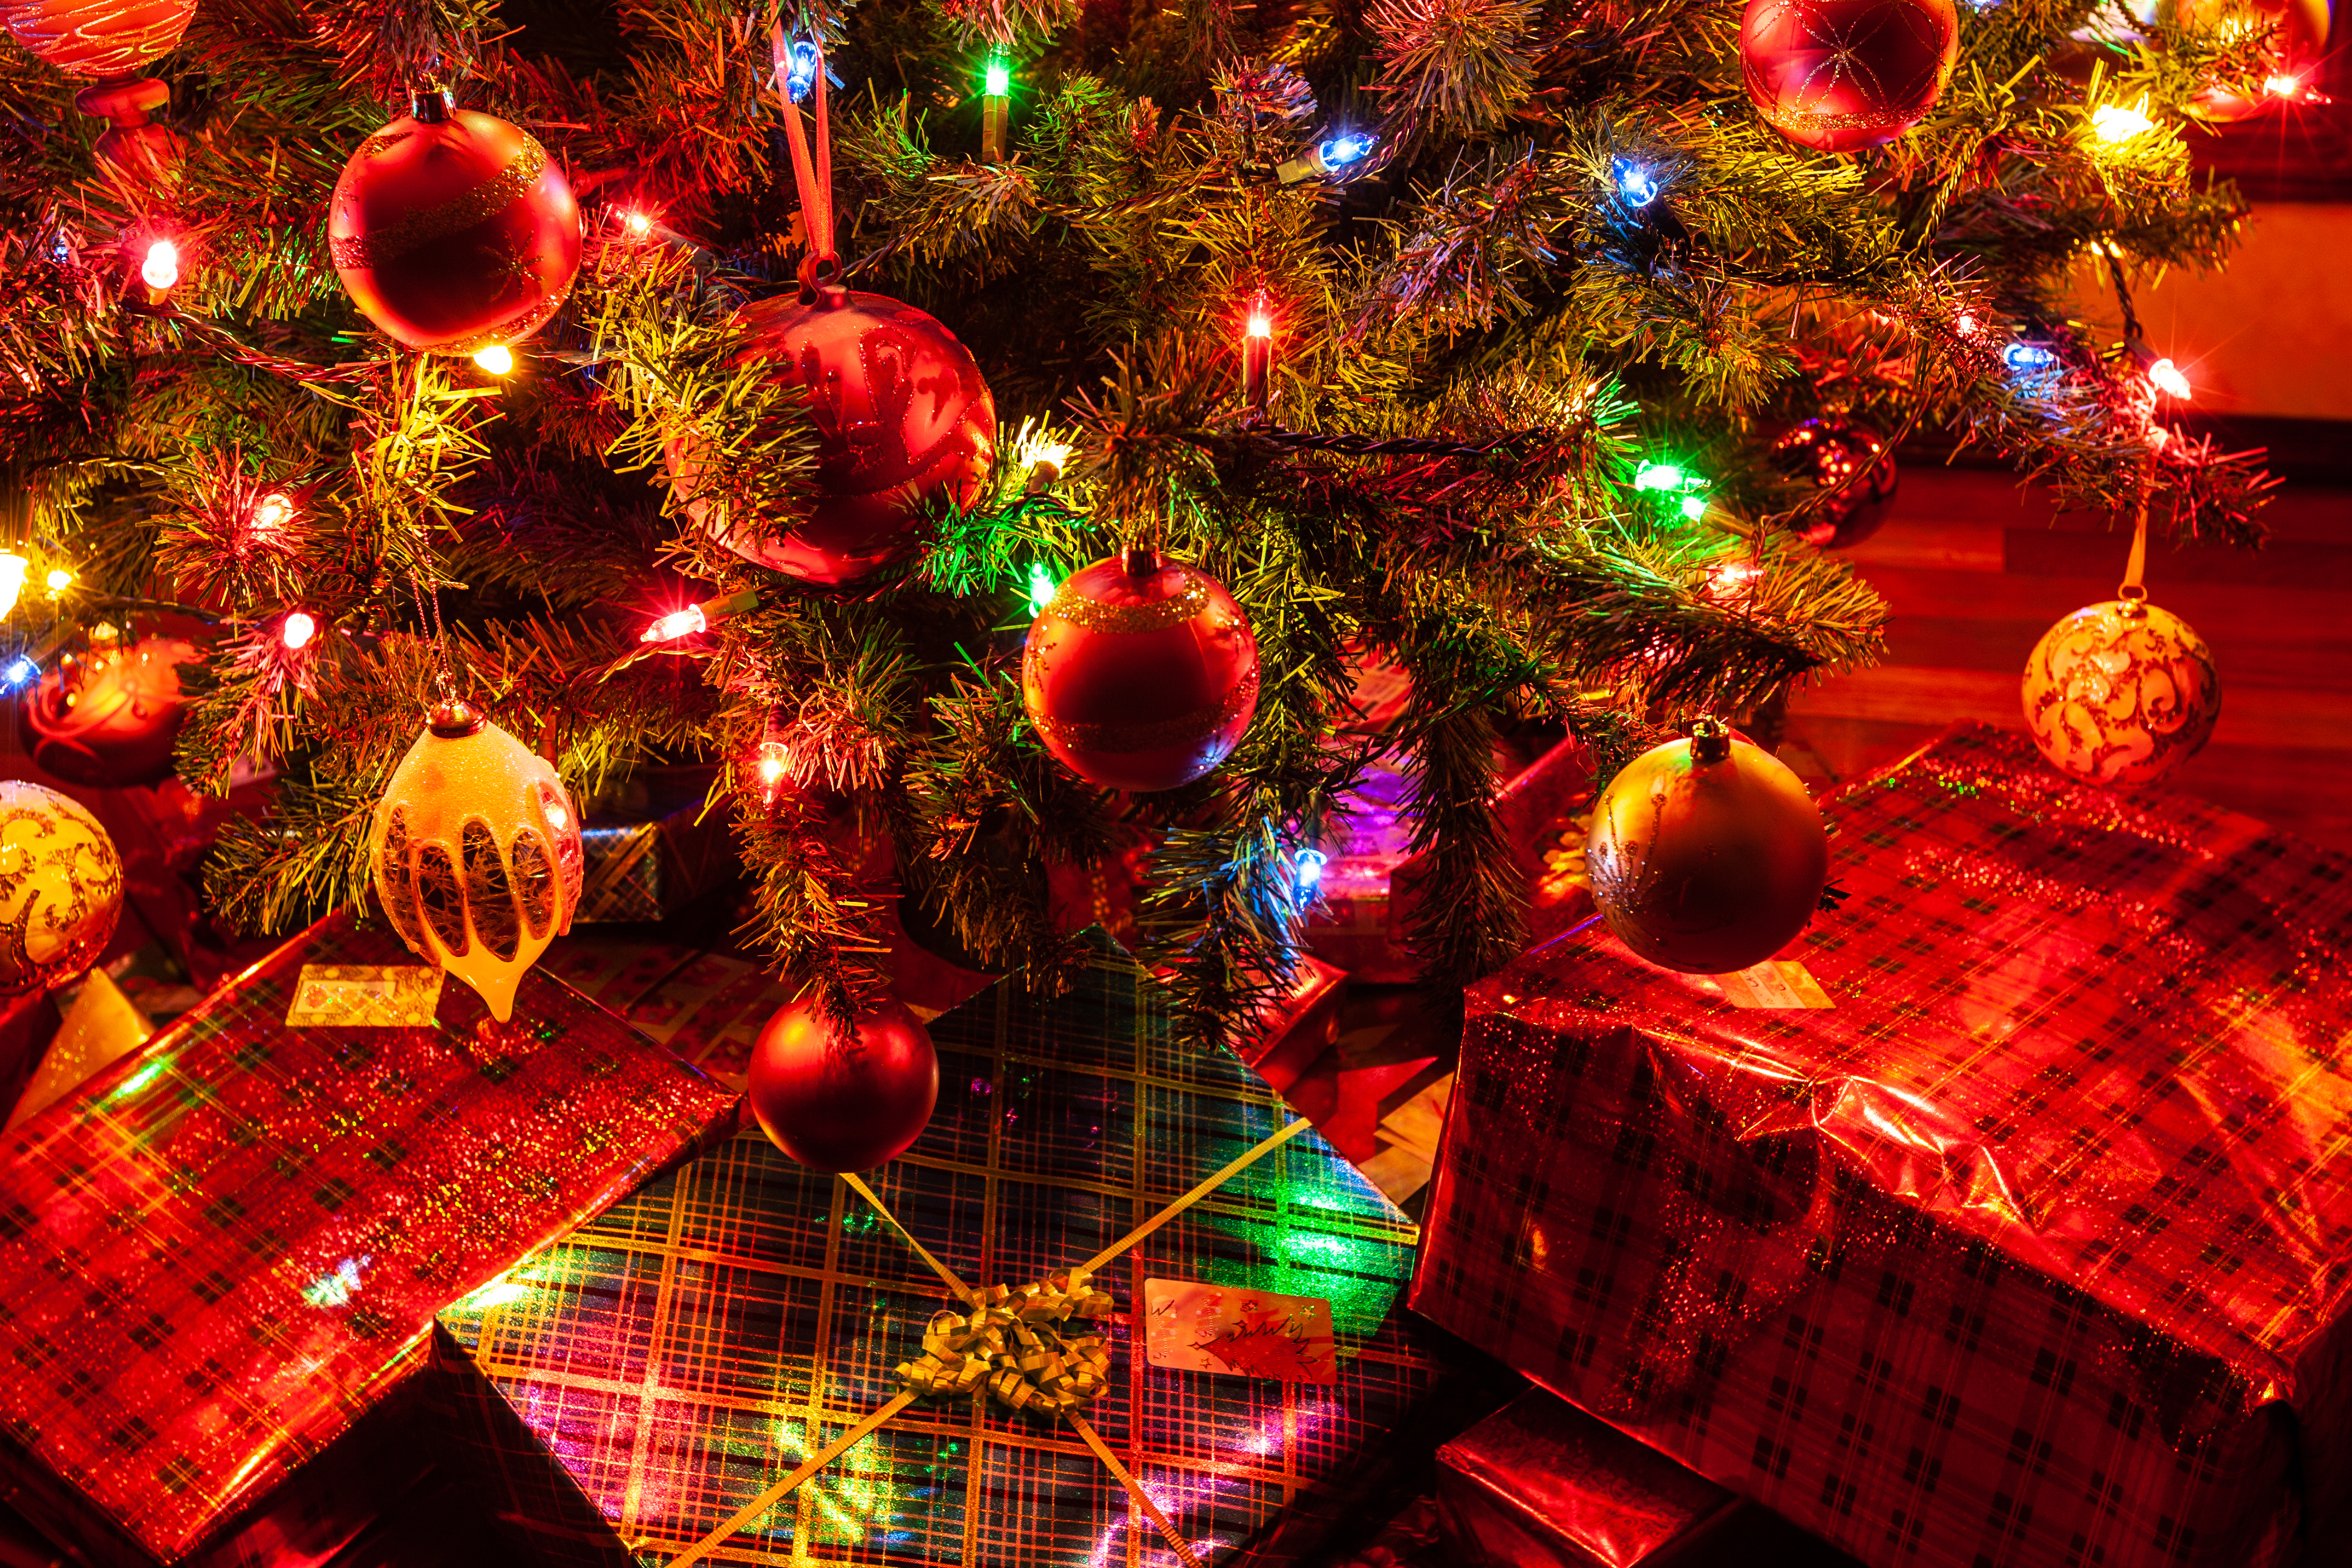 Mùa Giáng sinh không thể thiếu cây thông Noel và những quà tặng. Những hình ảnh đầy màu sắc và ý nghĩa này sẽ khiến bạn cảm thấy hạnh phúc và tươi vui. Hãy chiêm ngưỡng những chiếc găng tay ấm áp, những khăn quàng phong cách, và đặc biệt là những hộp quà được trang trí tới từng chi tiết nhỏ.